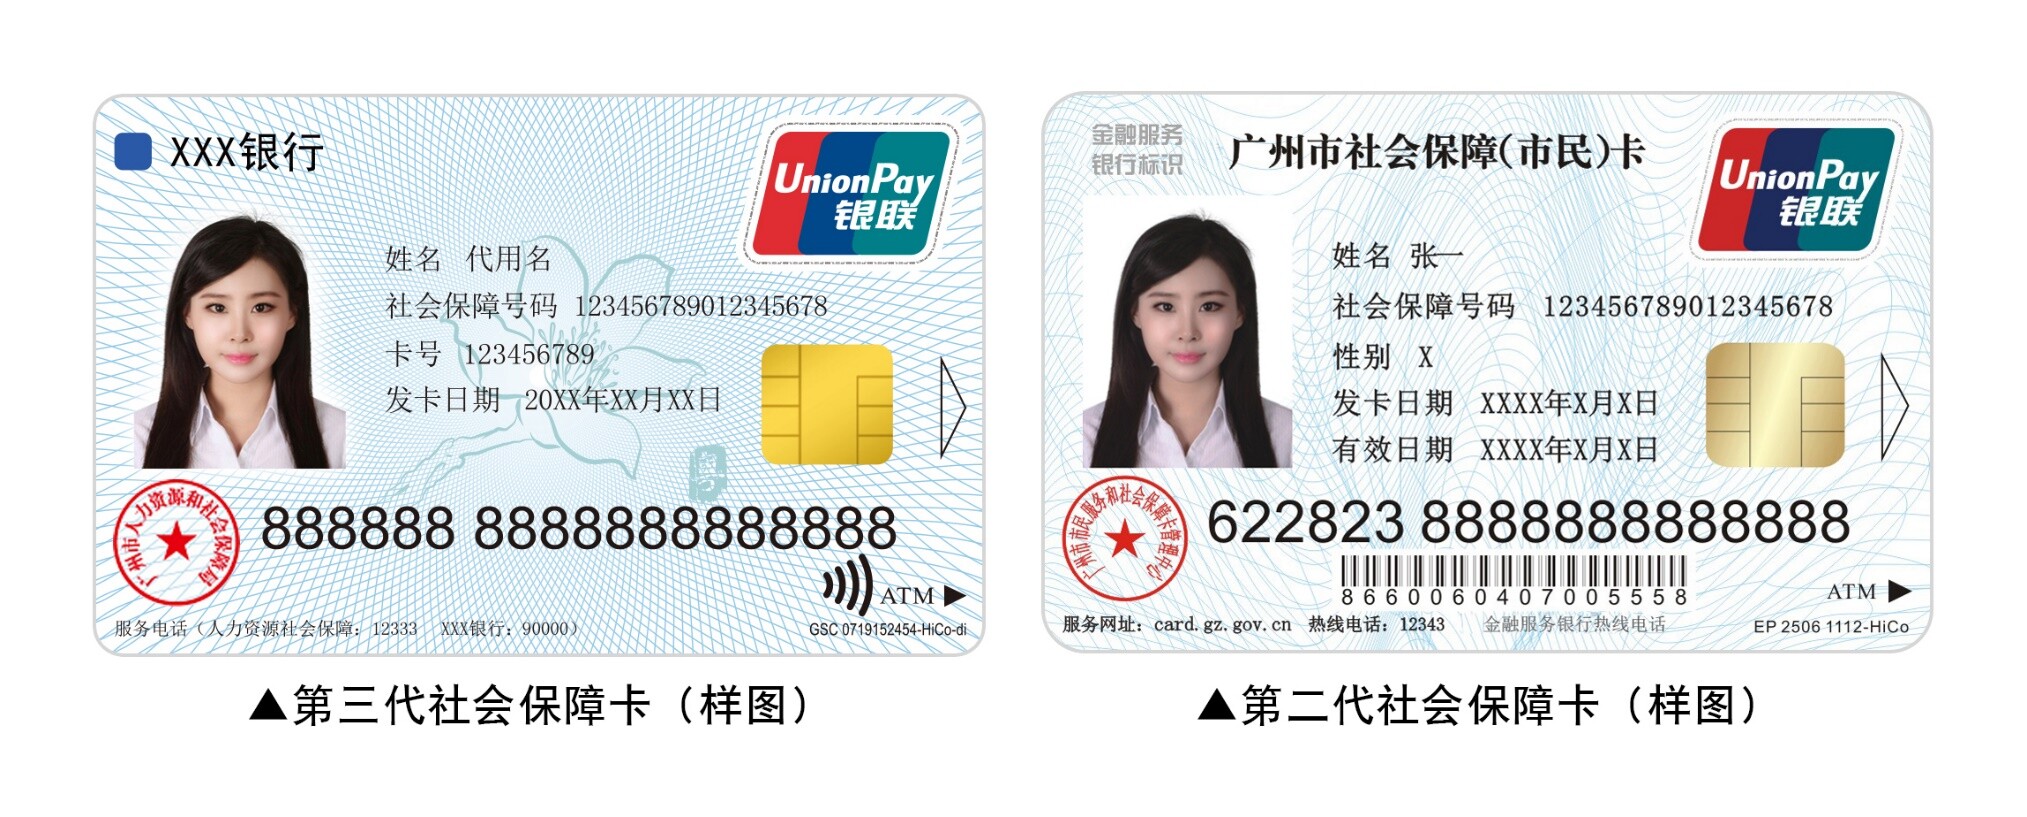 头条│广州市启动第三代社保卡发行新增非接触读卡功能